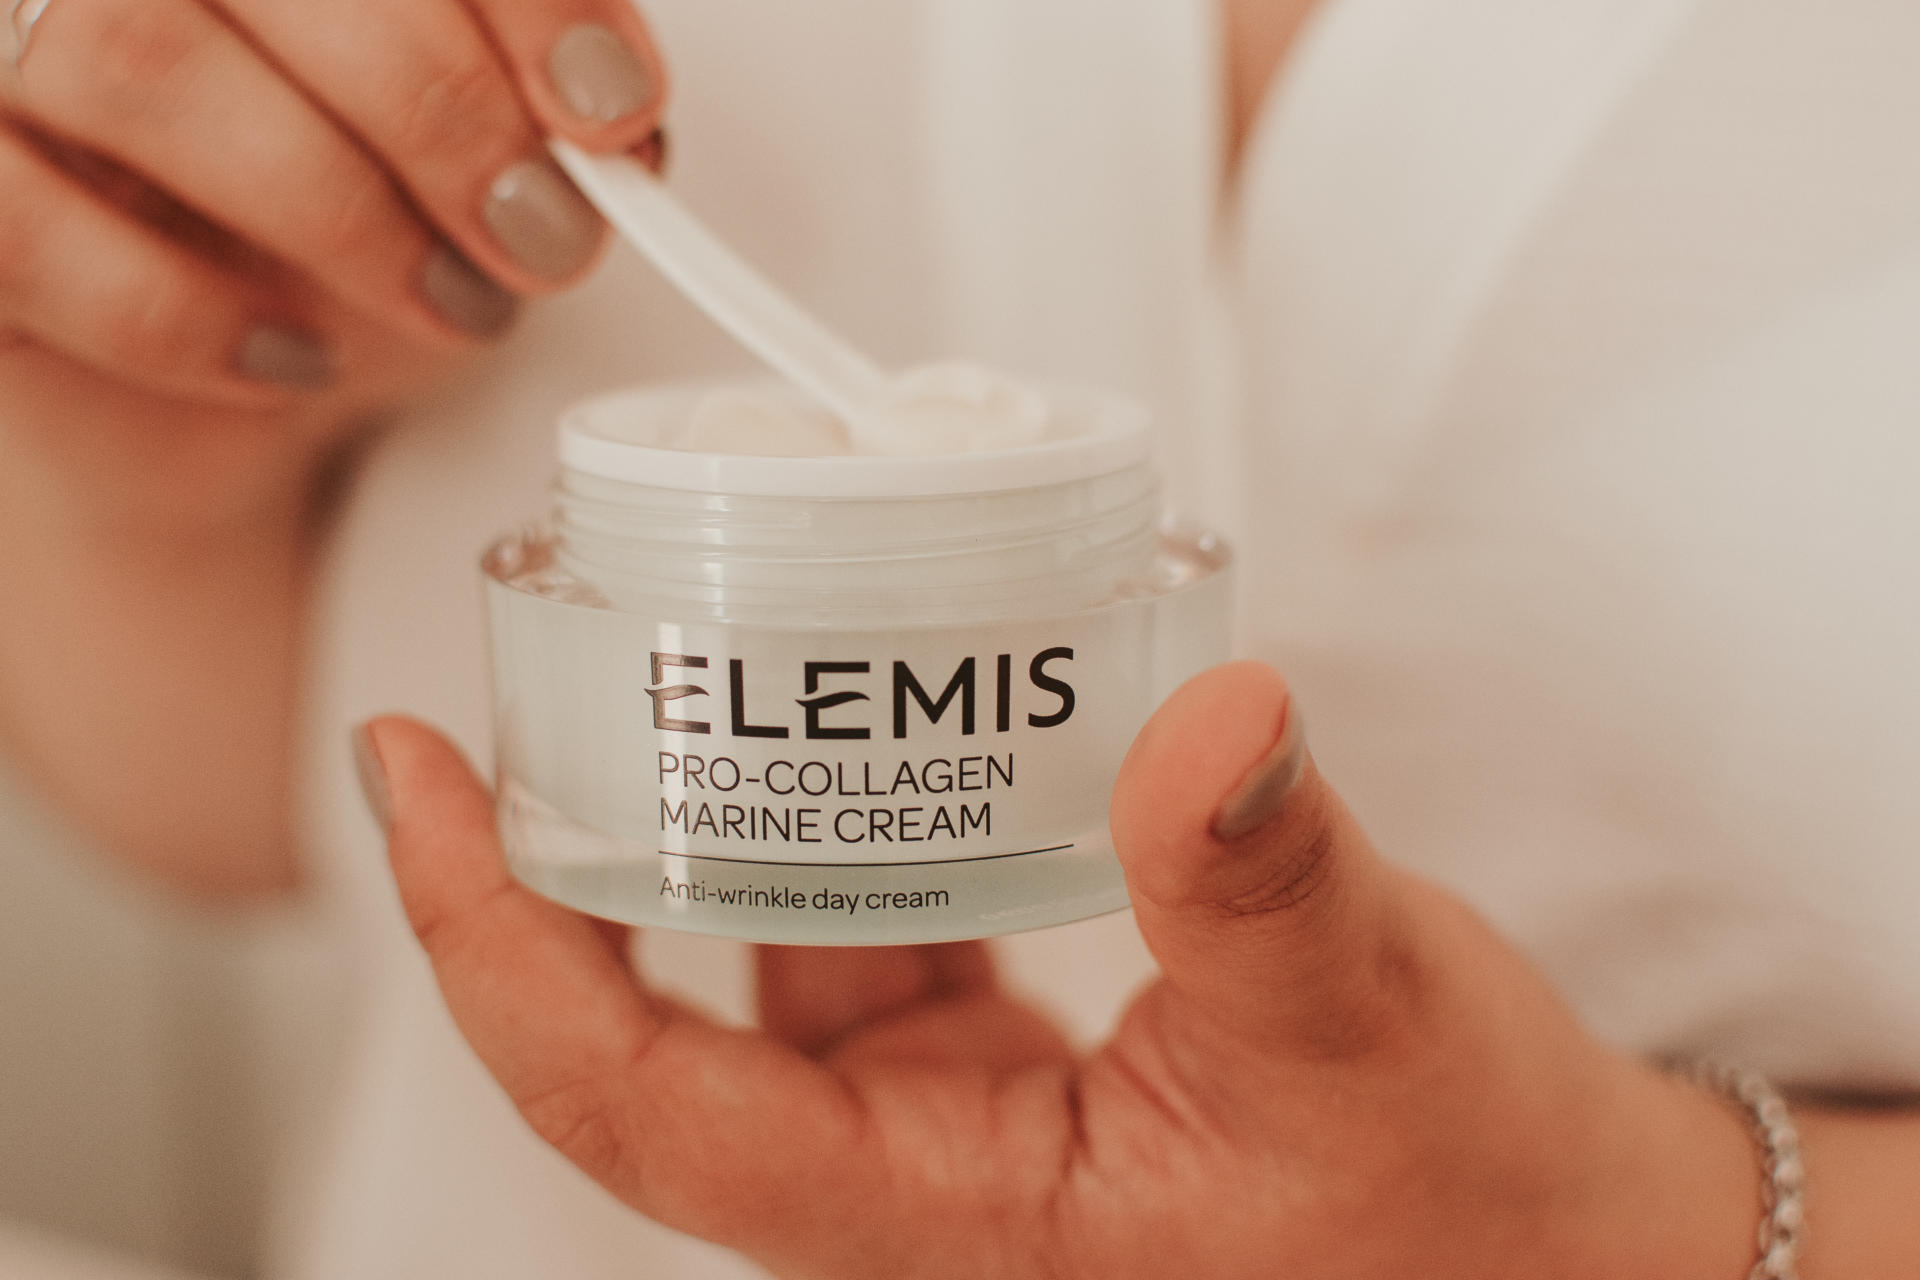 Elemis Pro-Collagen Marine Cream Review